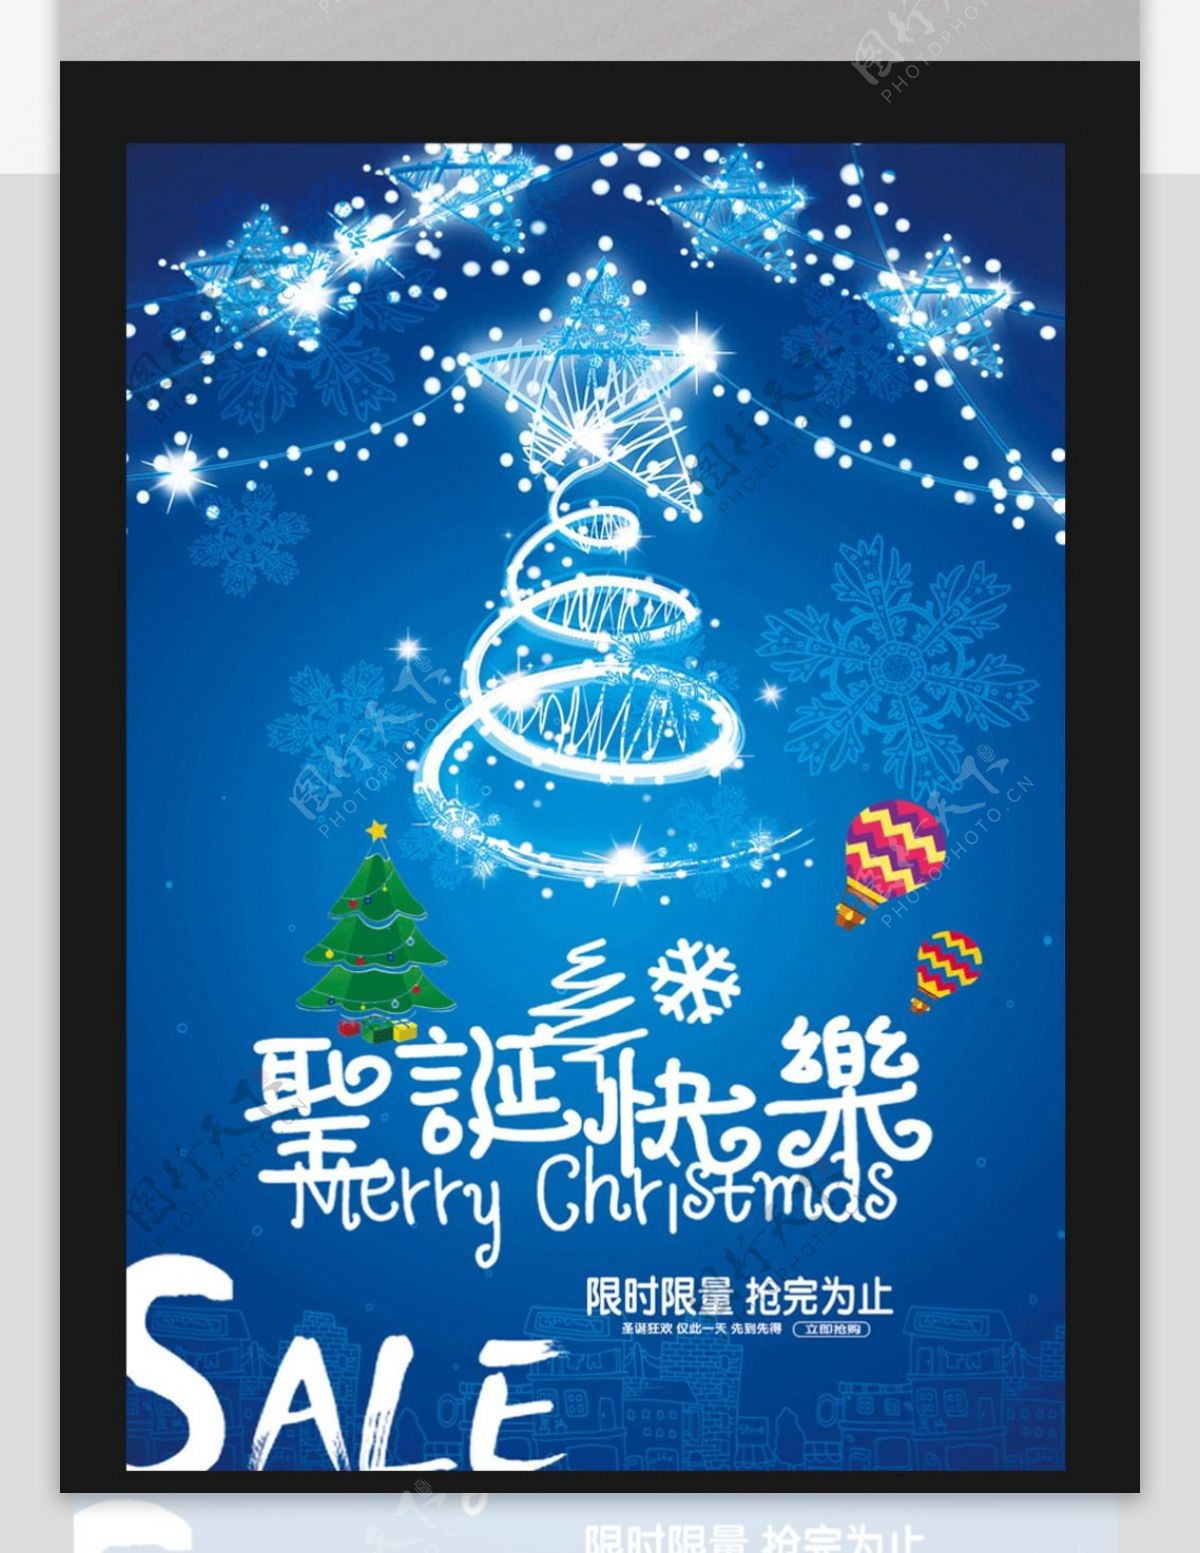 蓝色梦幻圣诞节促销海报